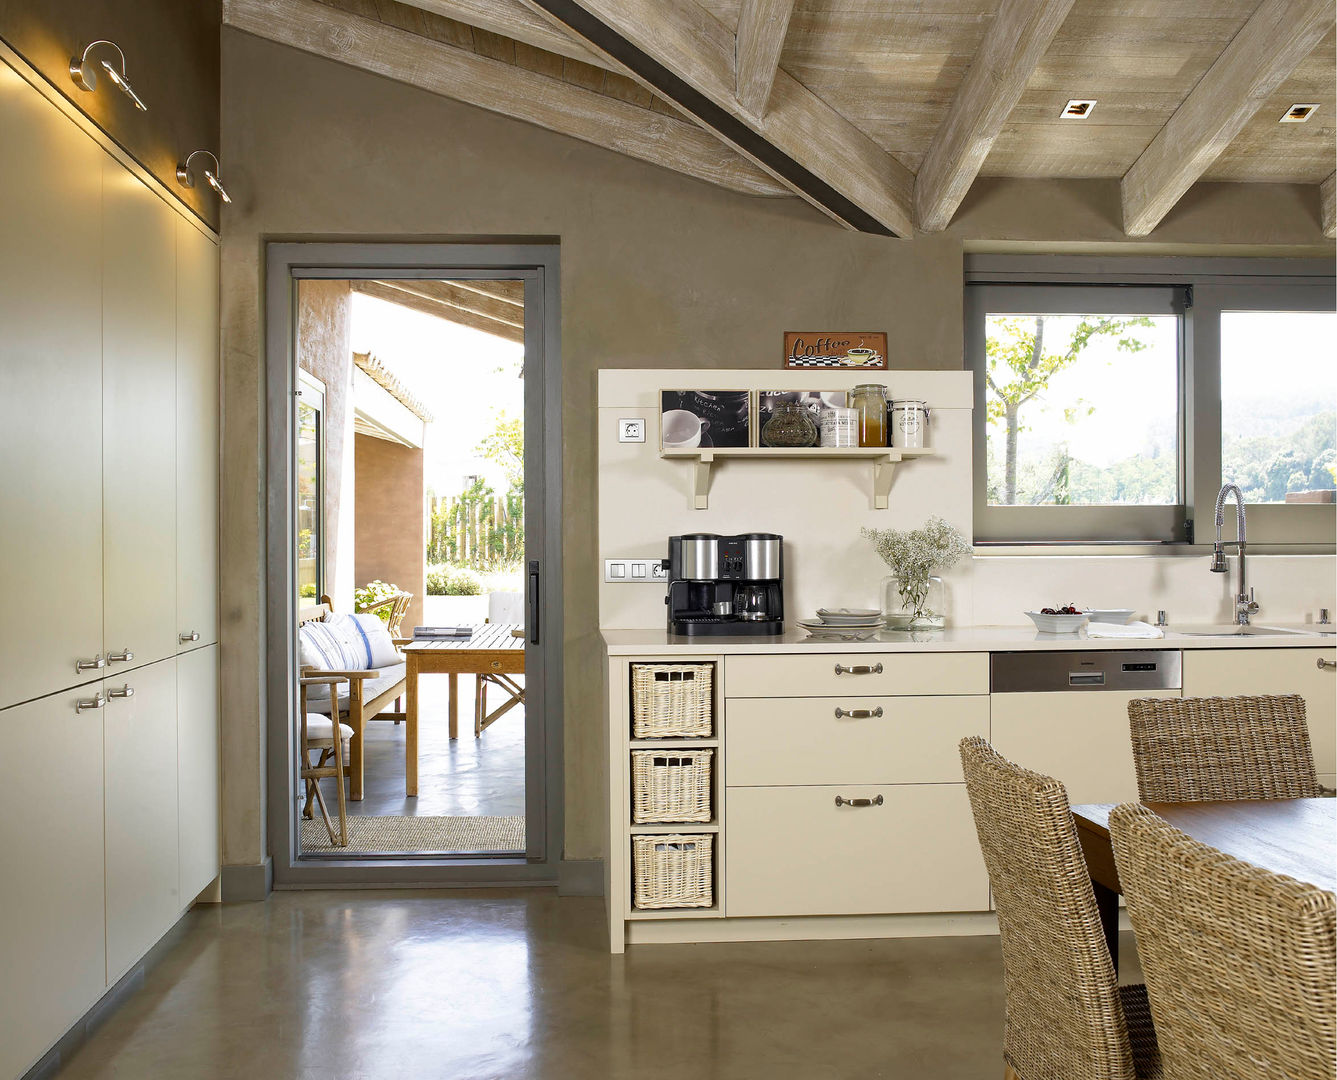 Tres espacios en uno: cocina, lavadero y planchador, DEULONDER arquitectura domestica DEULONDER arquitectura domestica 러스틱스타일 주방